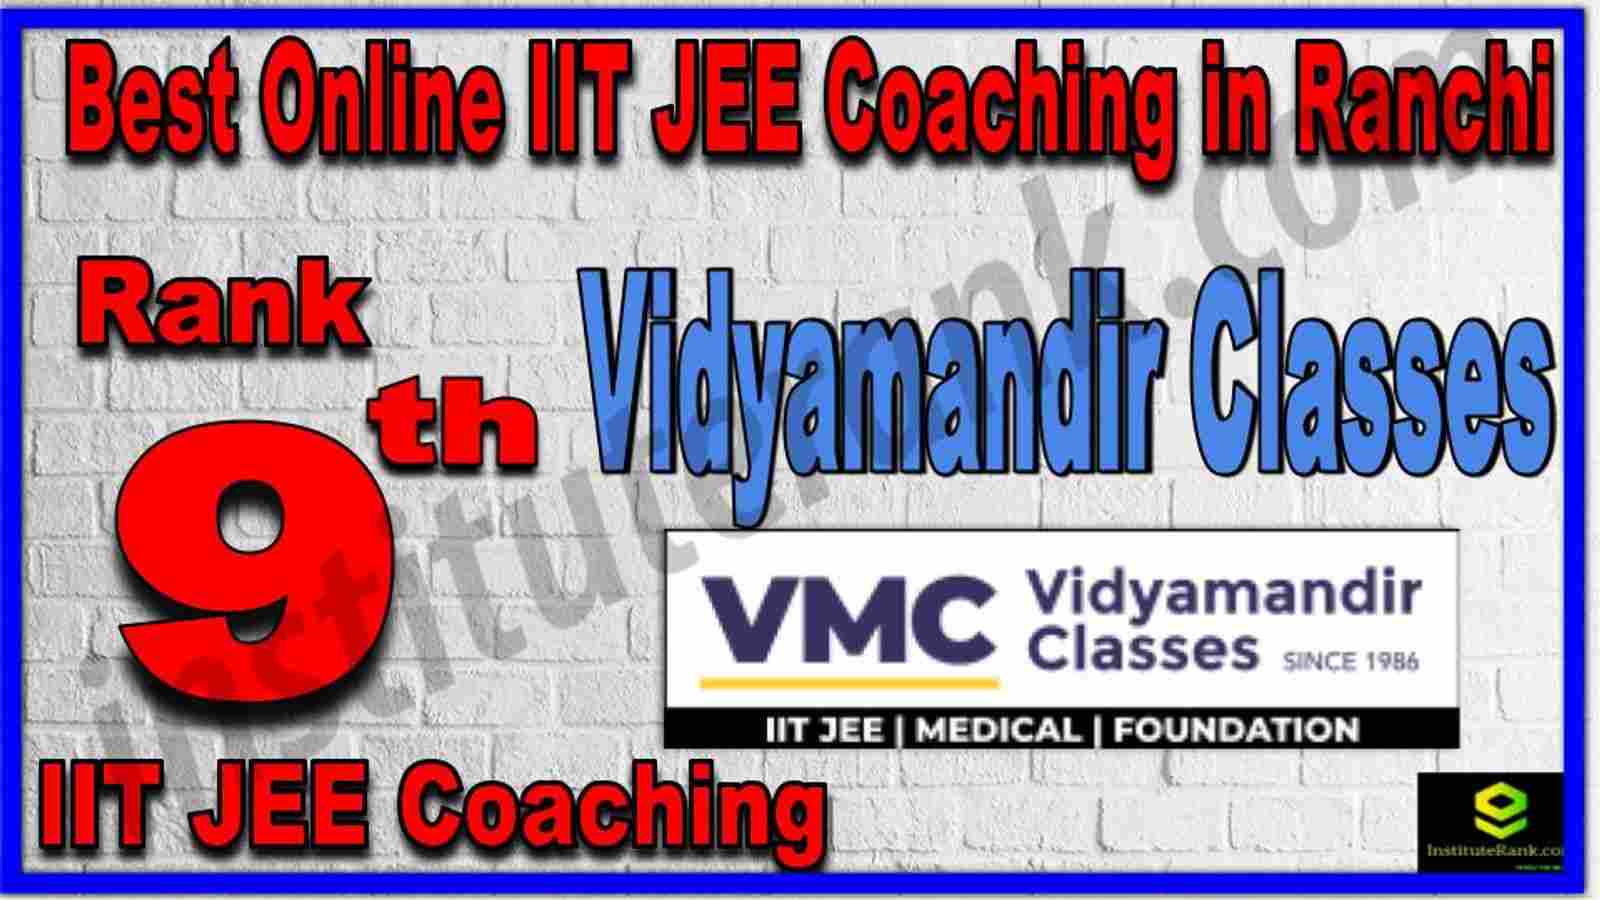 Rank 9th Best Online IIT JEE Coaching in Ranchi